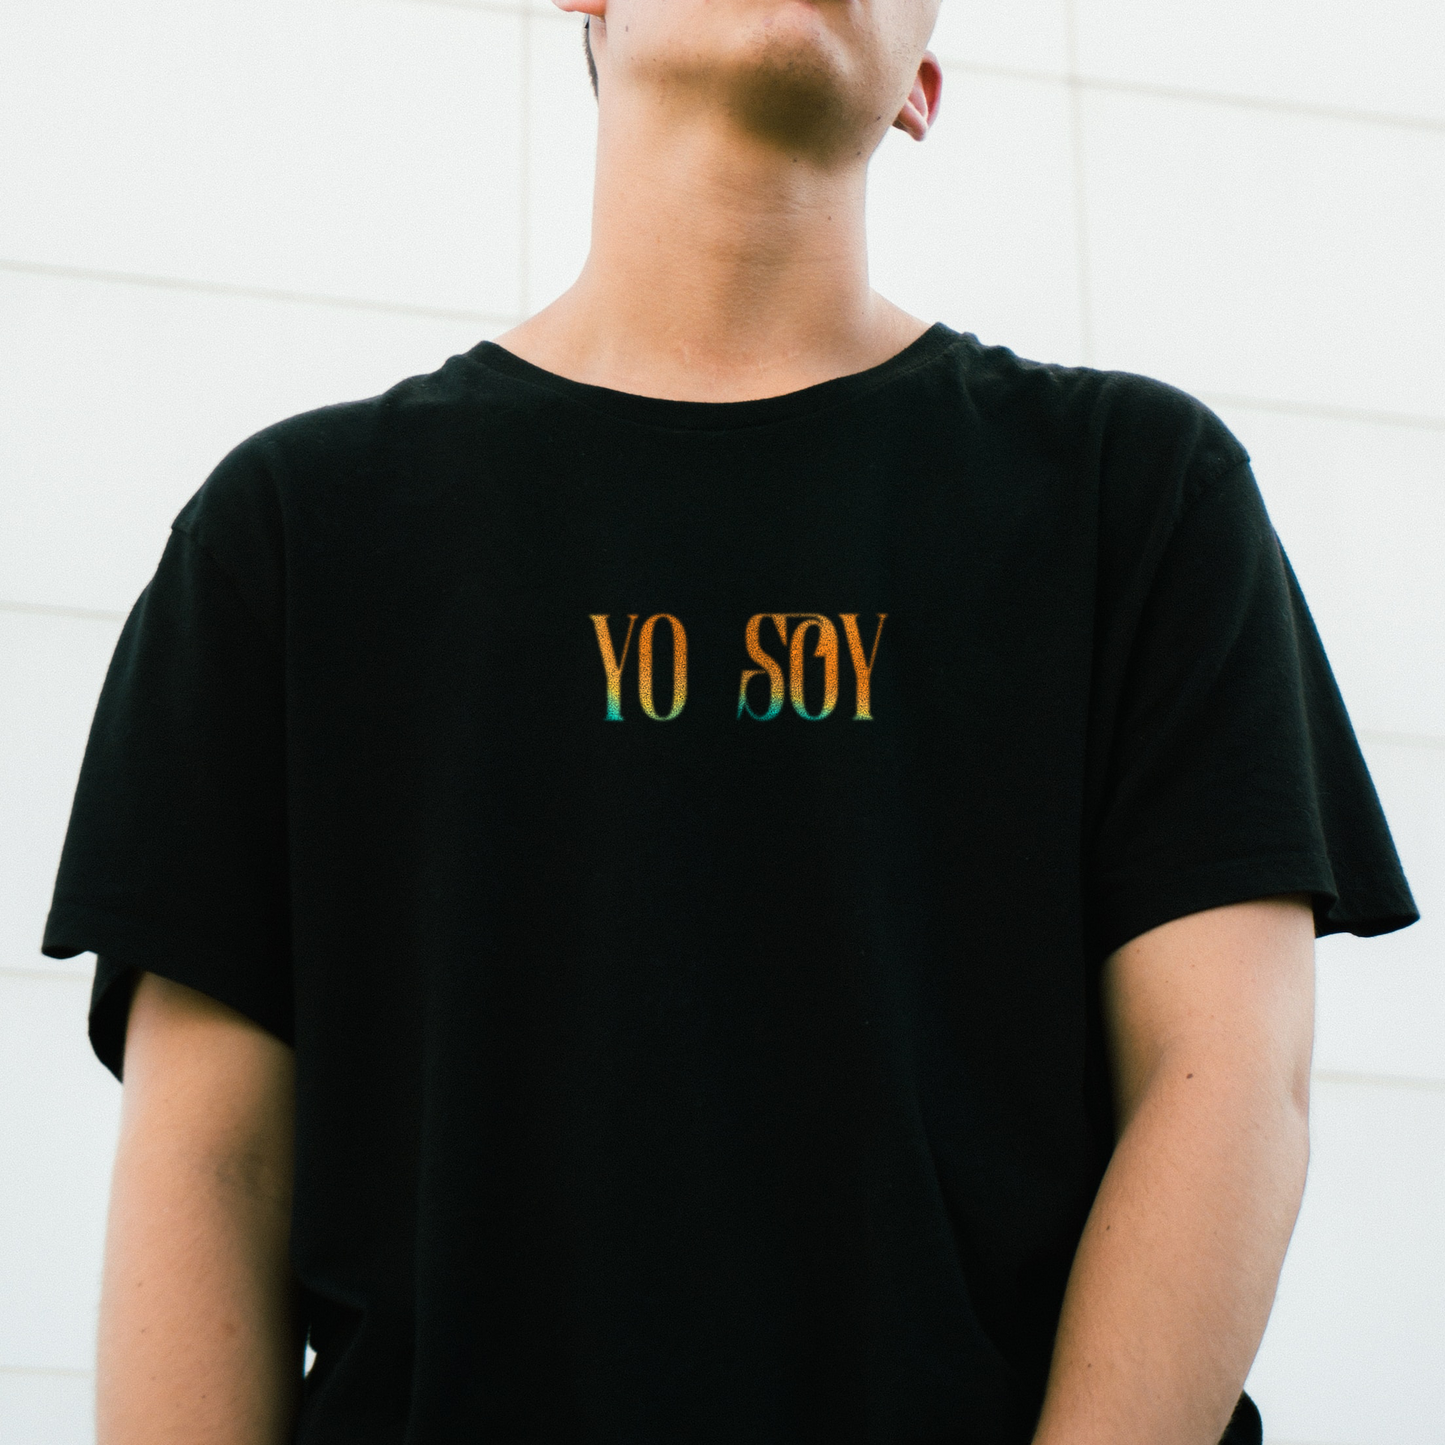 Camiseta "YO SOY" (Español)